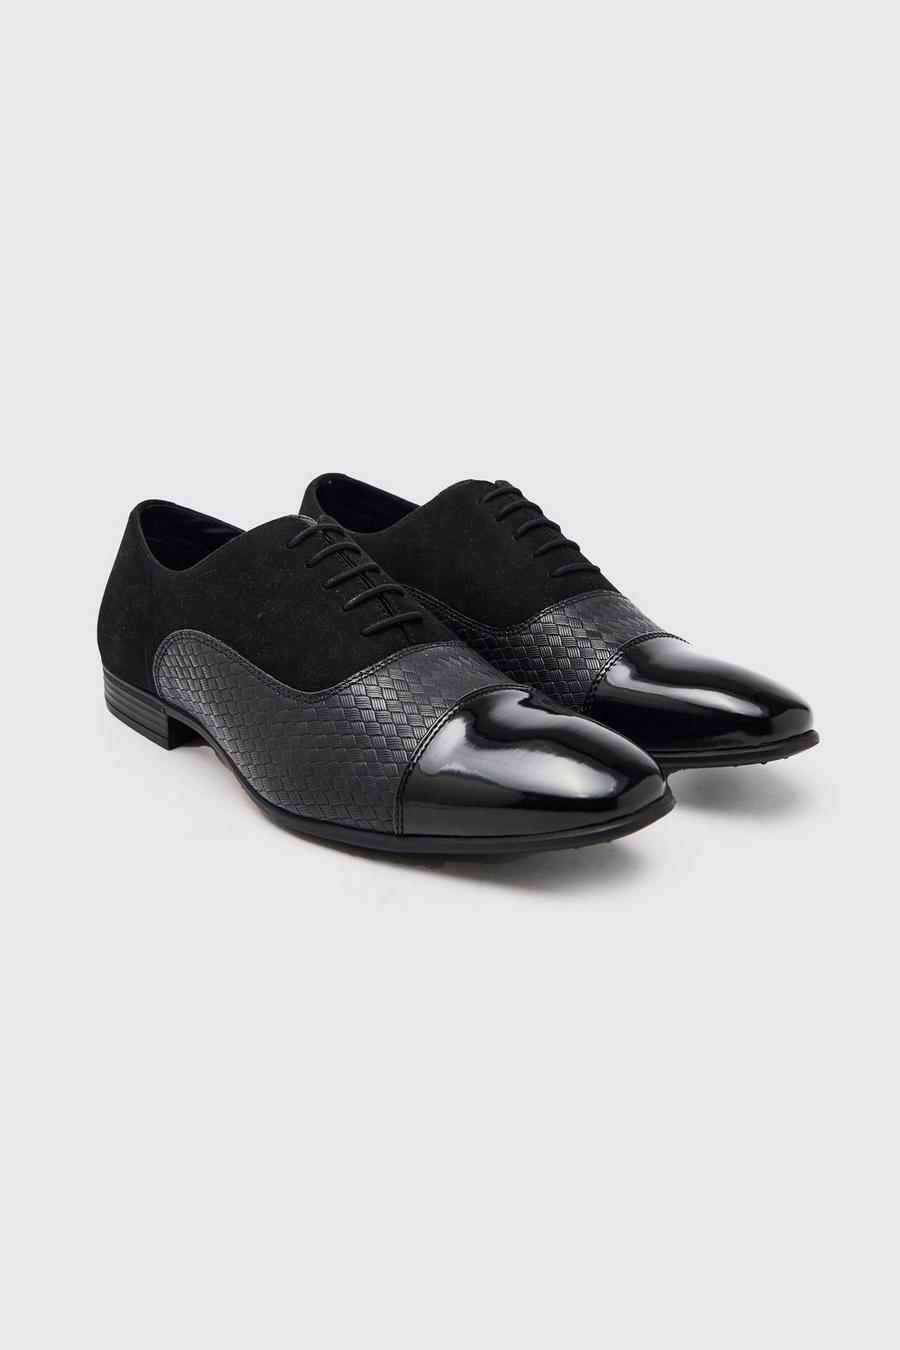 Chaussures Oxford à empiècements en faux daim, Black noir